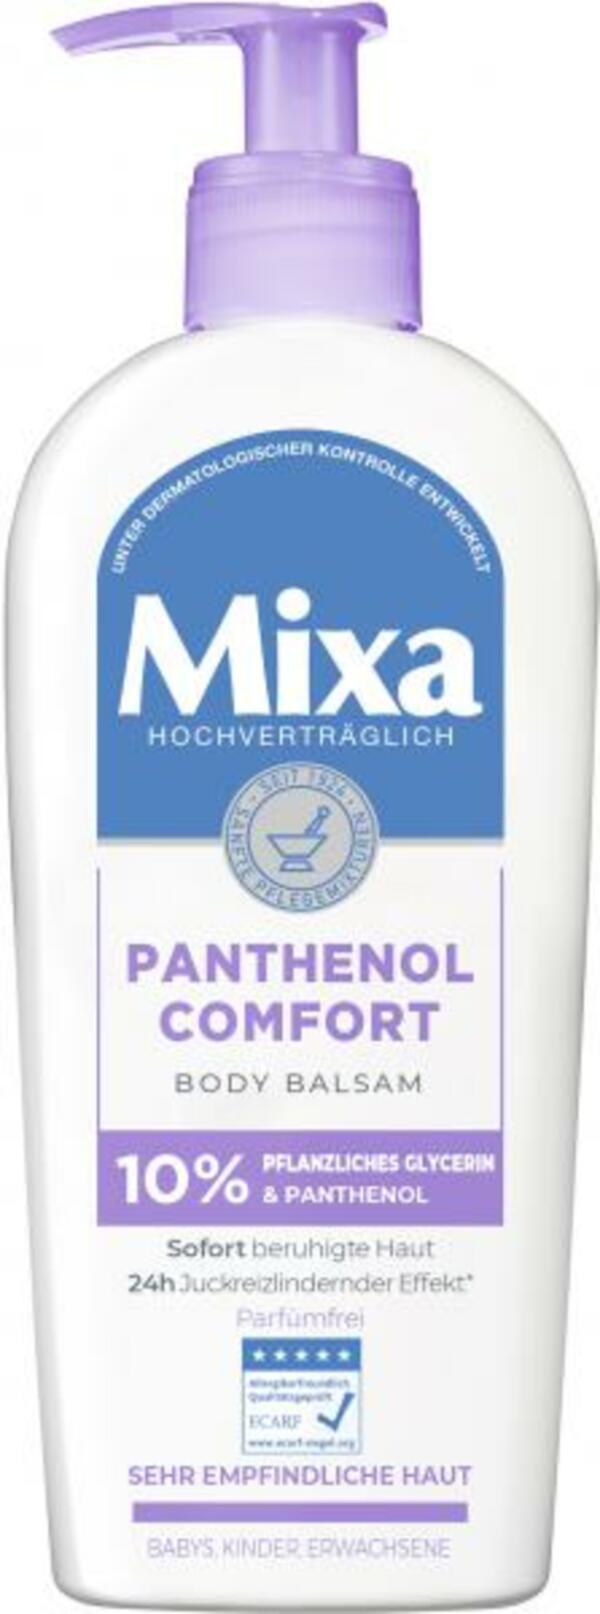 Bild 1 von Mixa Body Balsam Panthenol Comfort sehr empfindliche Haut